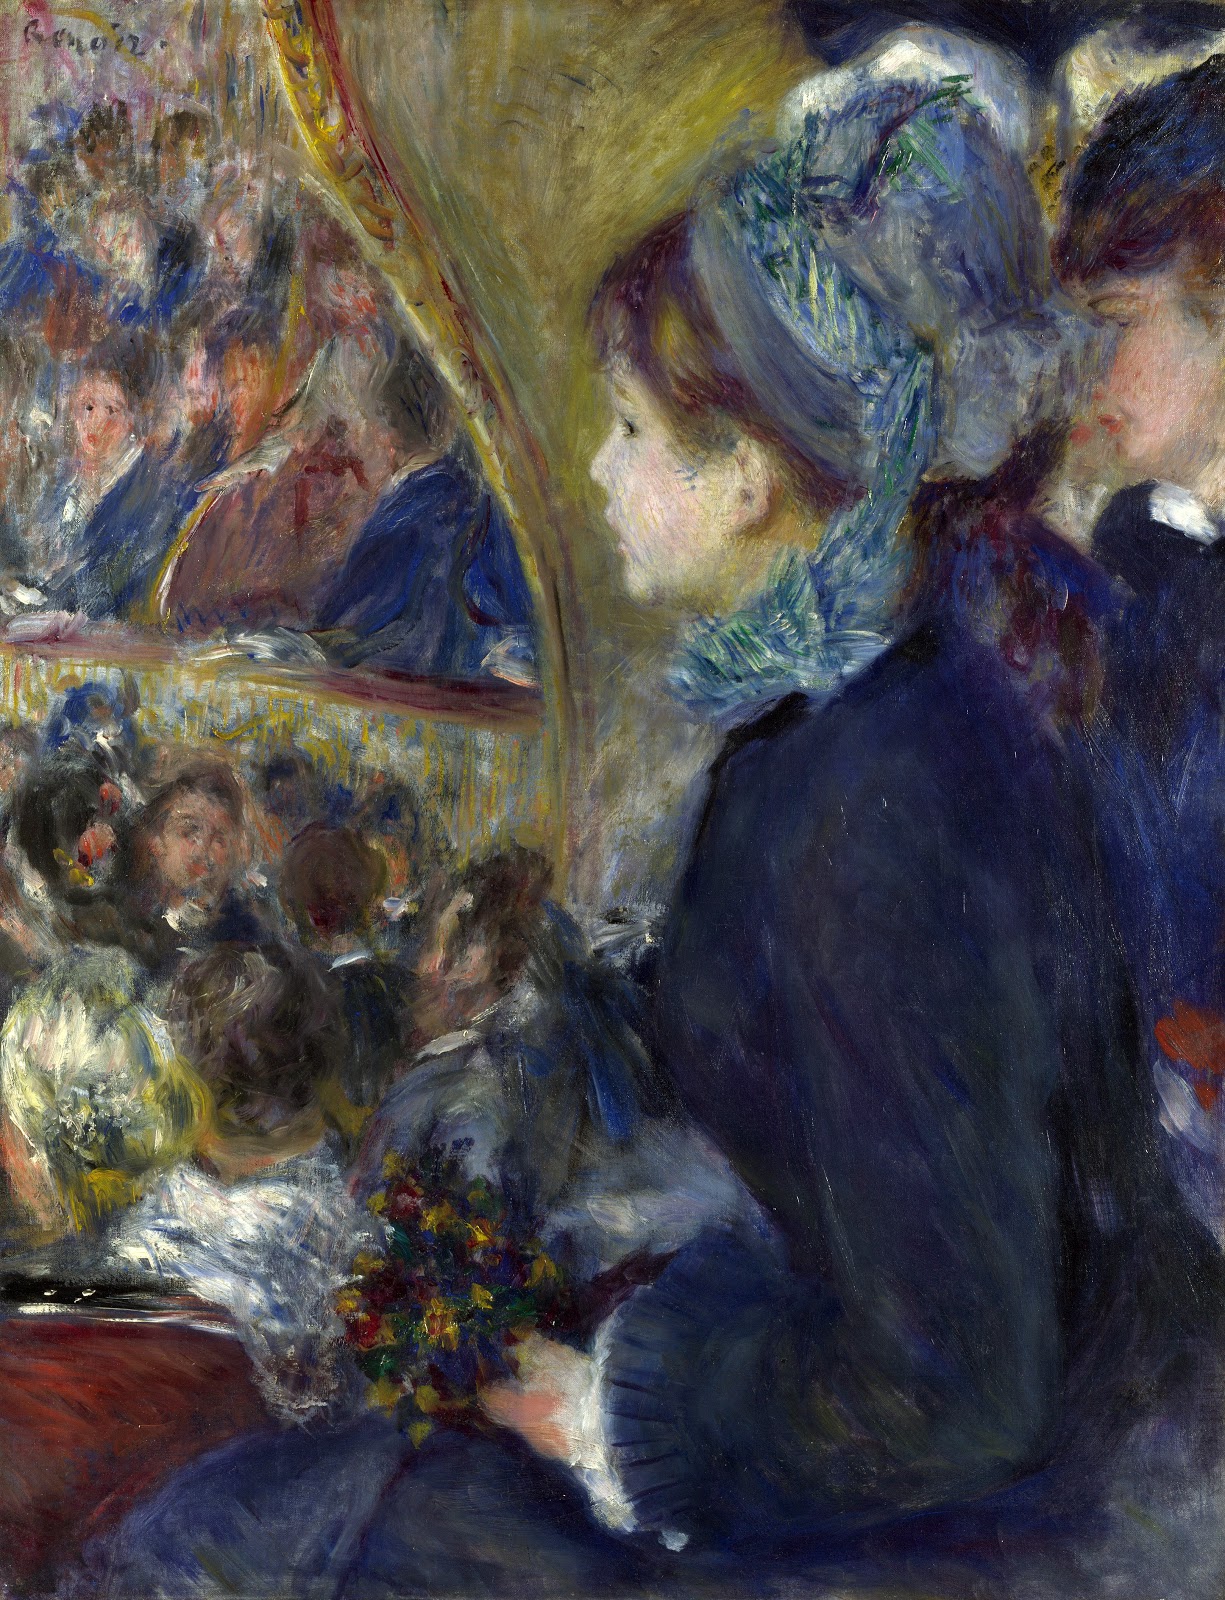 Pierre+Auguste+Renoir-1841-1-19 (793).jpg